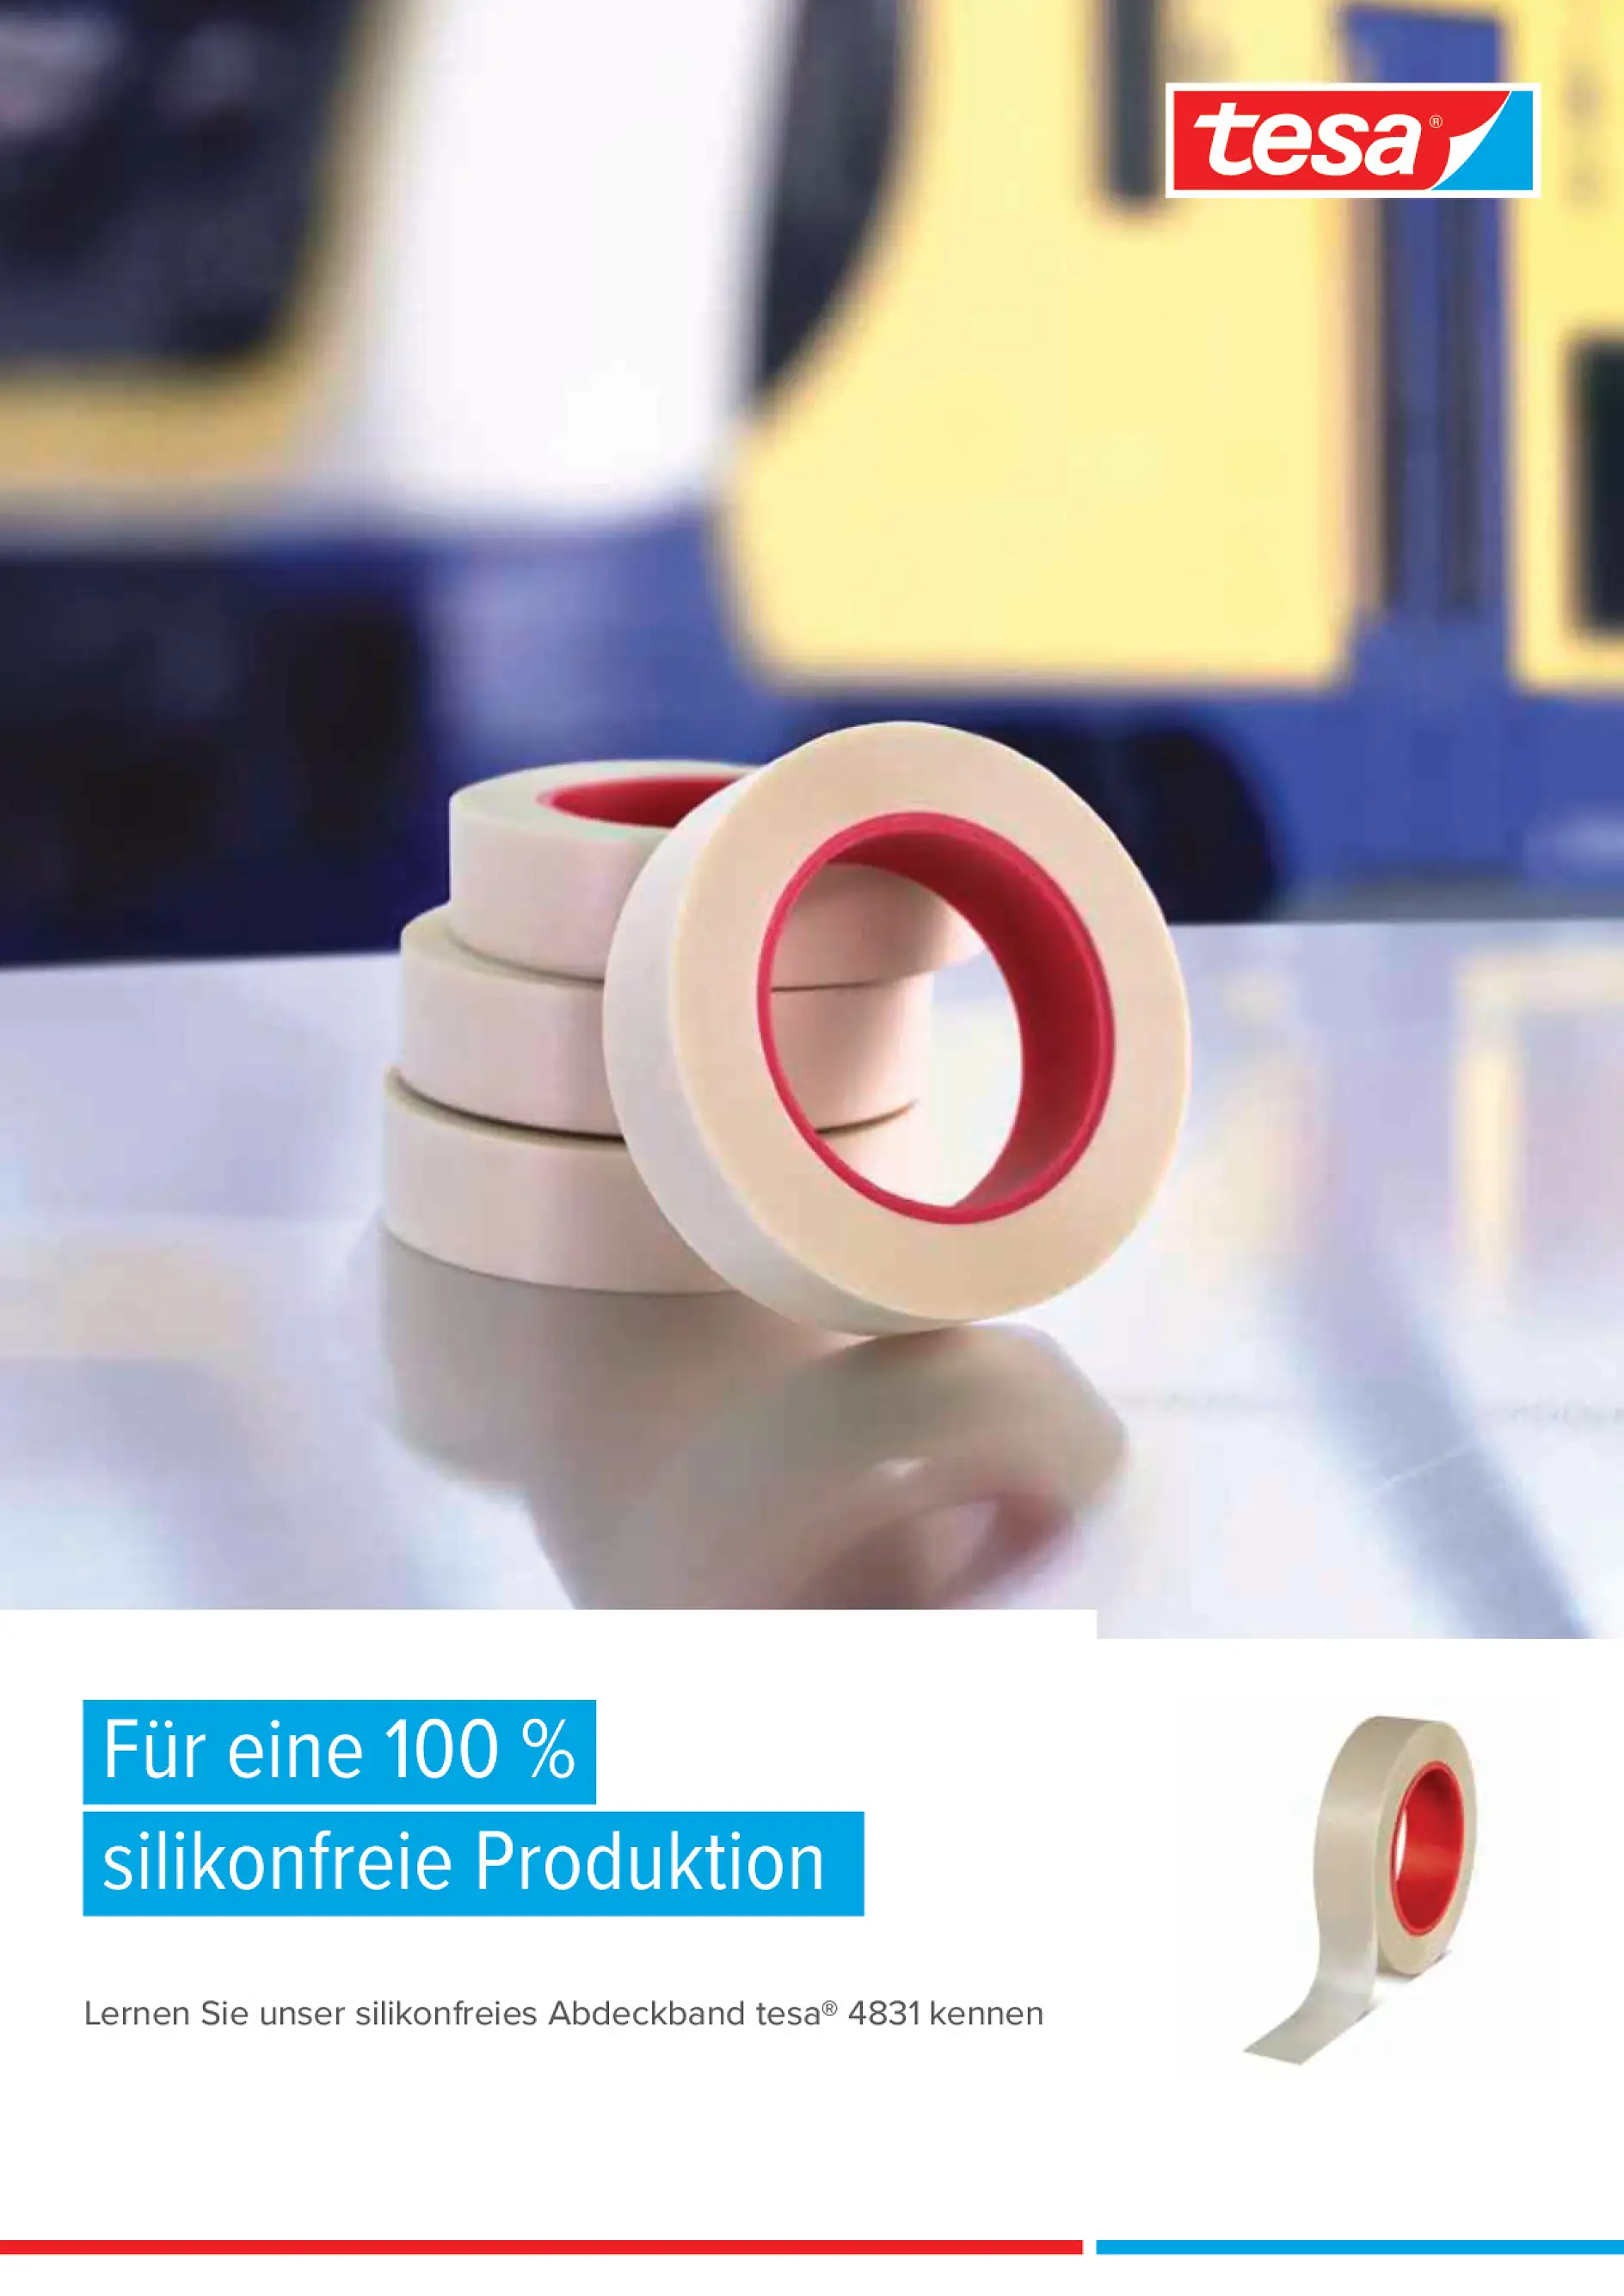 Für eine 100 % silikonfreie Produktion – Ihr neues Abdeckband tesa® 4831.